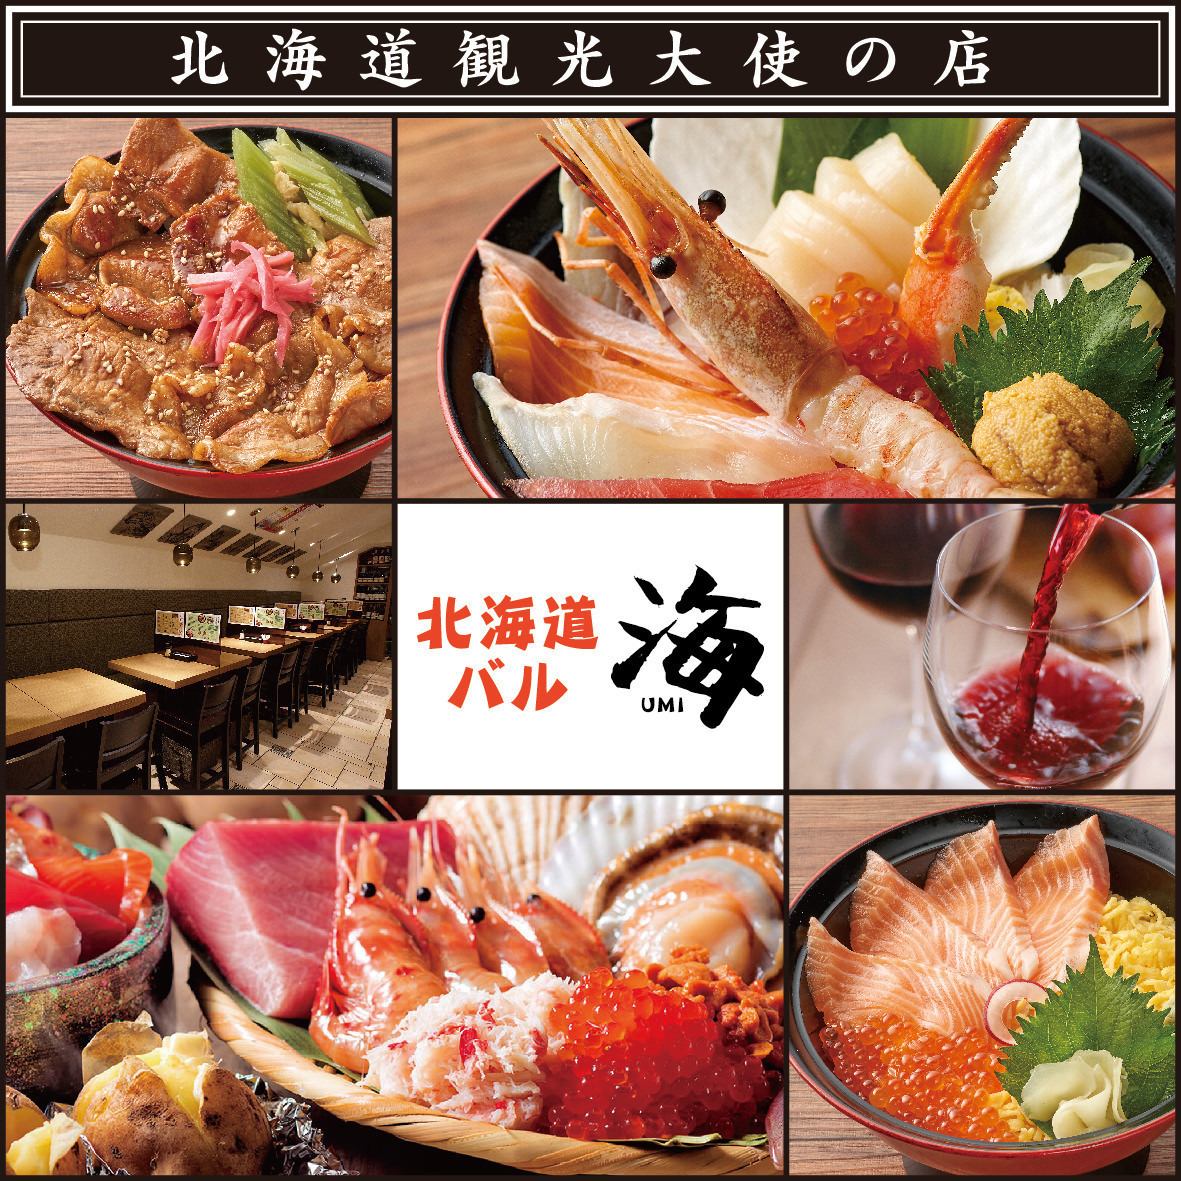 我们特别注重新鲜度和品质，您可以以合理的价格享用北海道的食材。